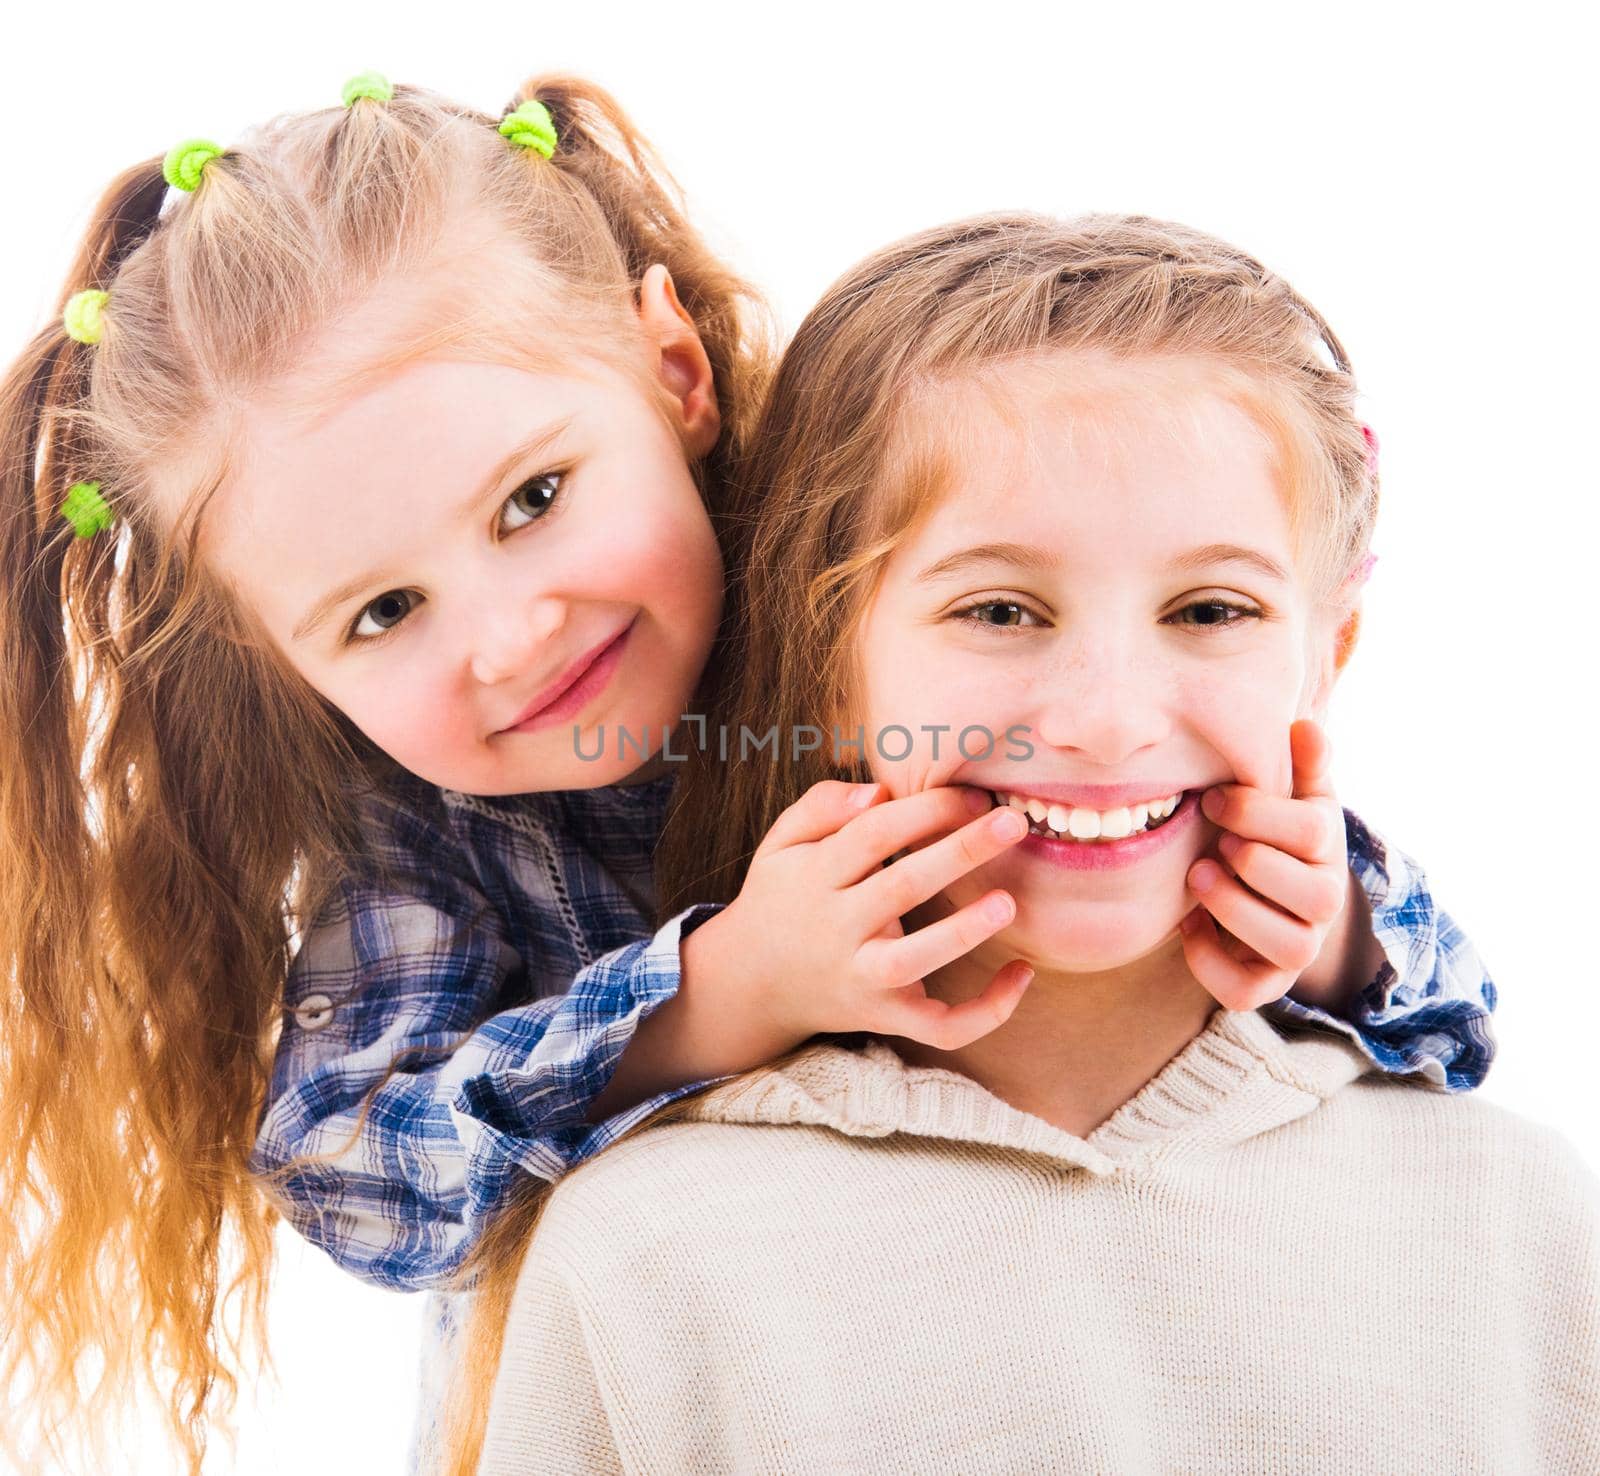 Little girl makes her older sister smile by GekaSkr